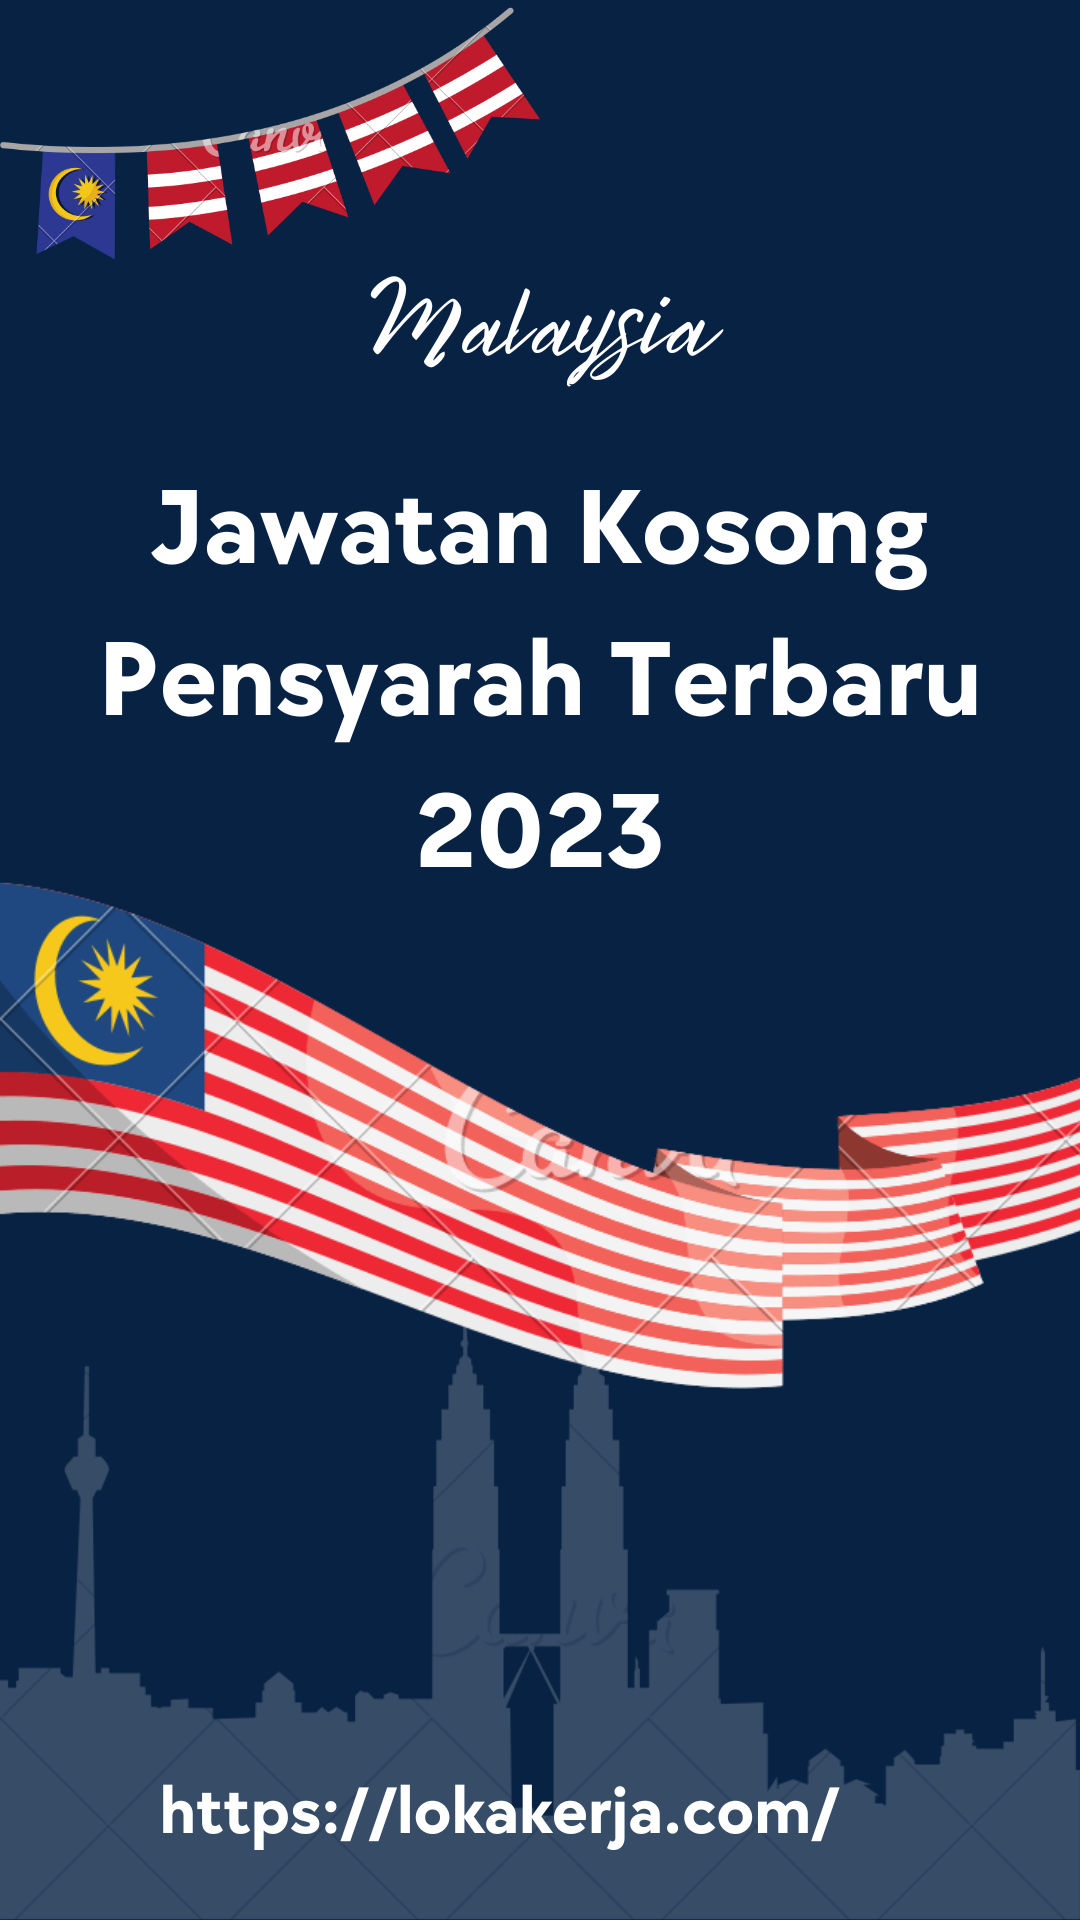 Jawatan Kosong Pensyarah Terbaru 2023 Near Location